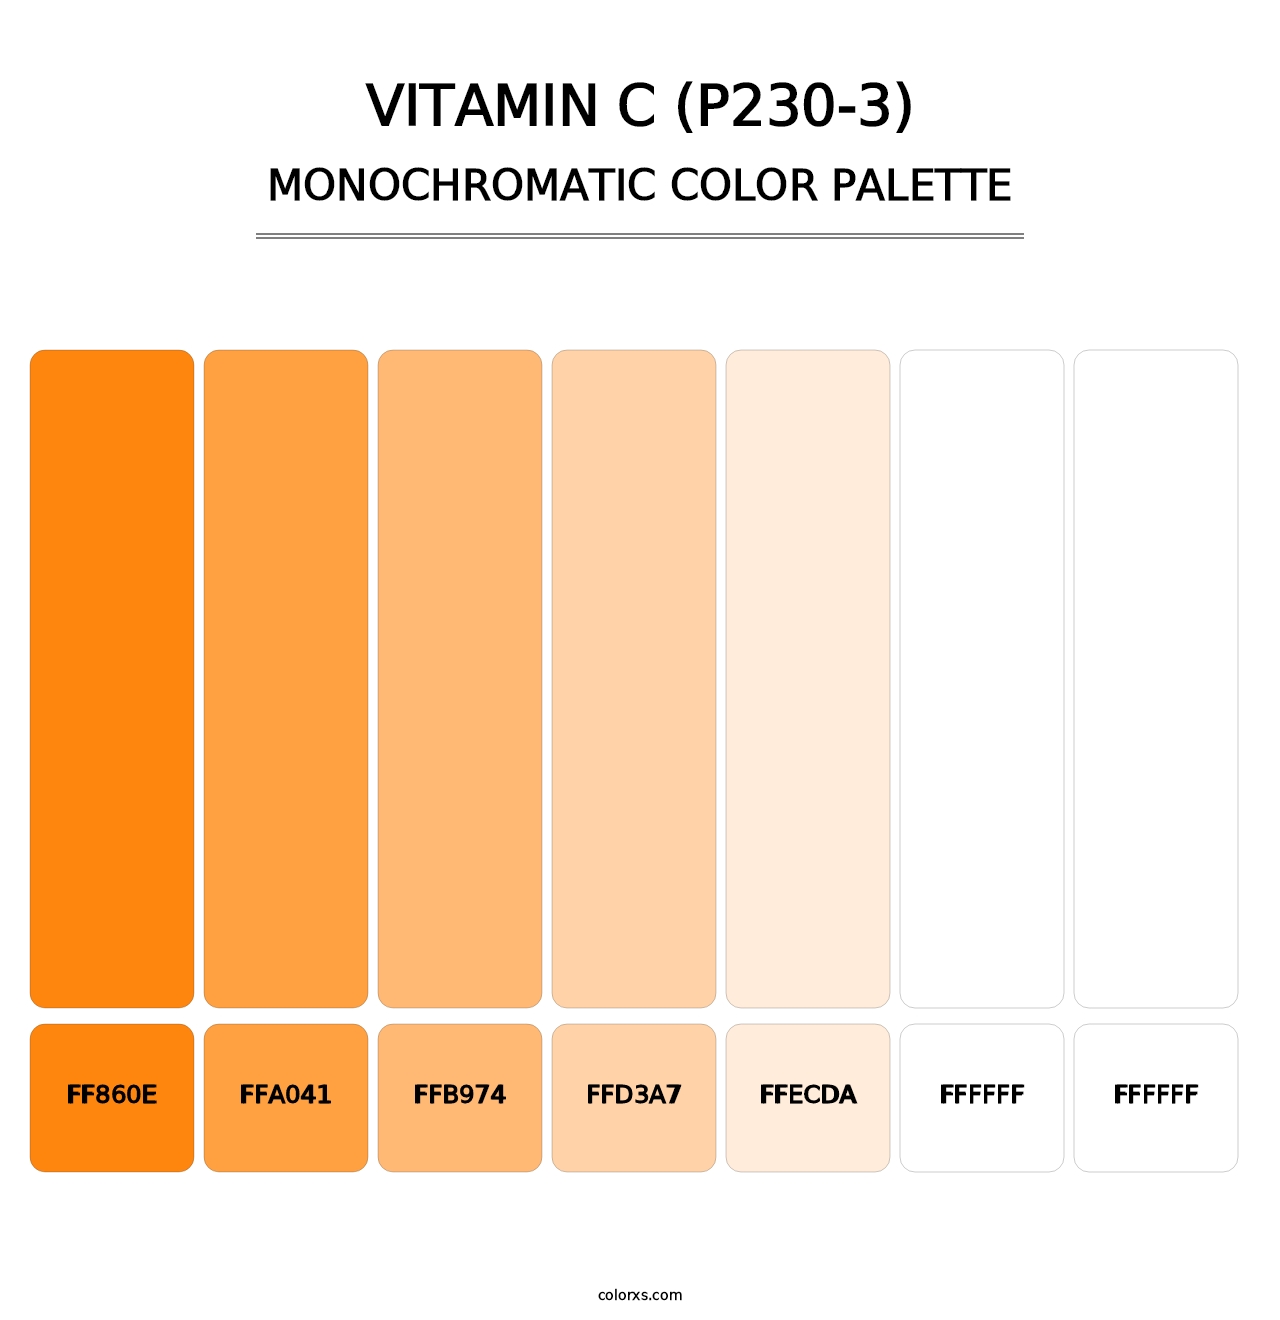 Vitamin C (P230-3) - Monochromatic Color Palette